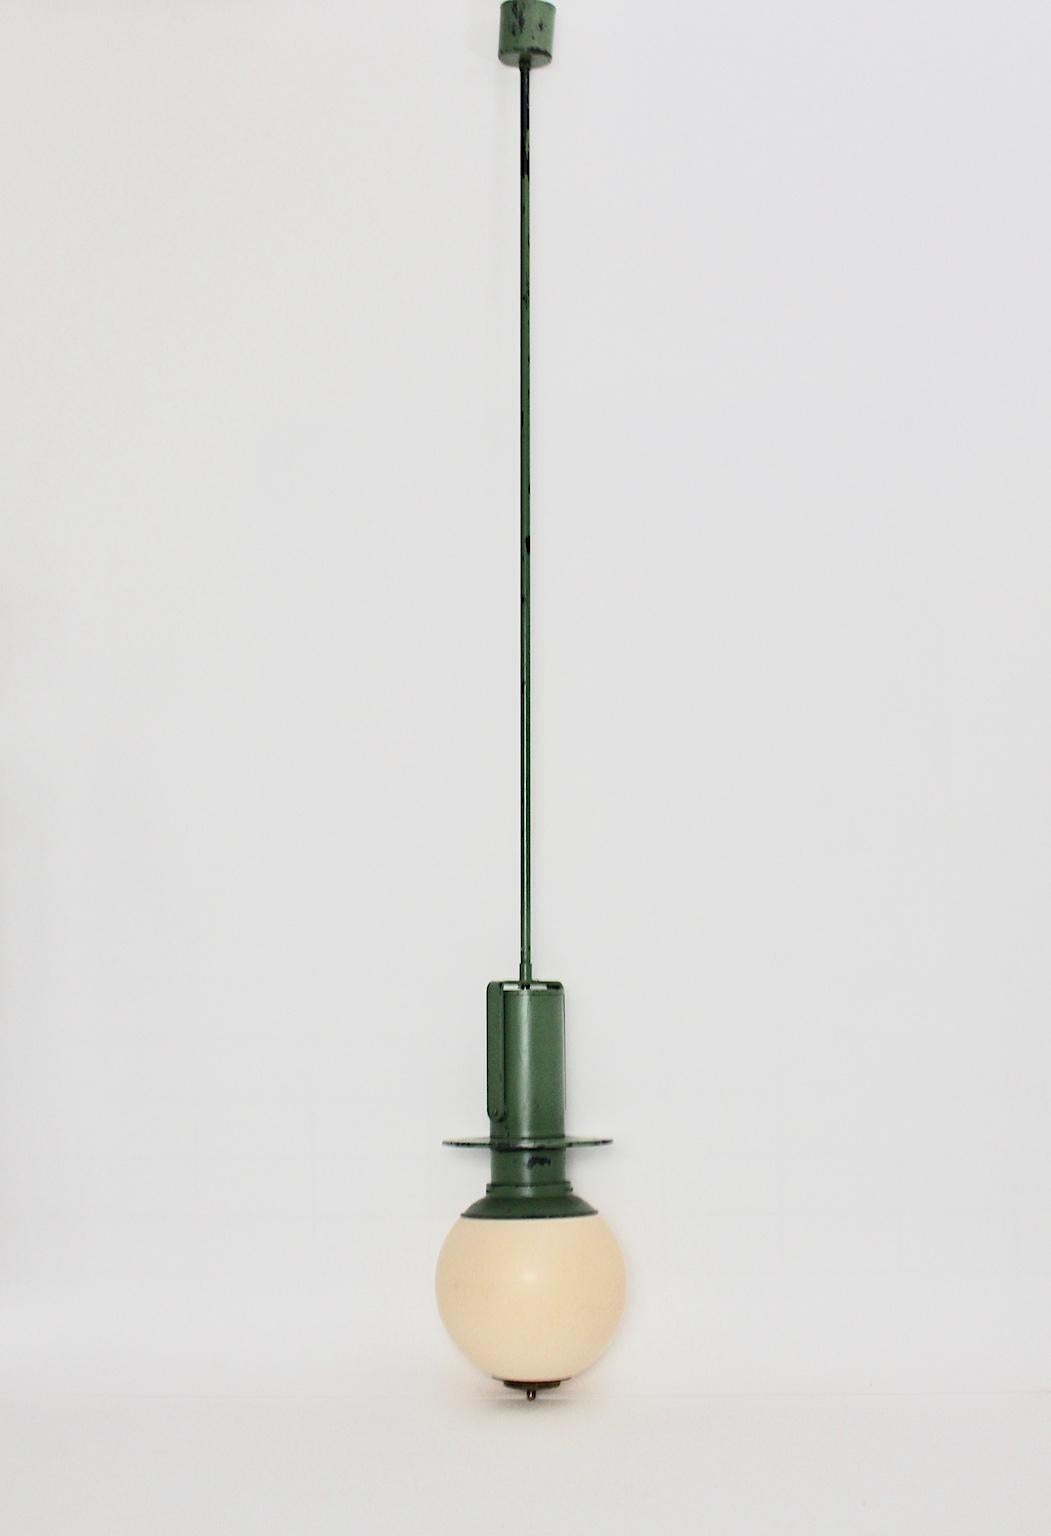 Une très rare lampe à suspension ou pendentif par Otto Wagner, Vienne, qui a été conçu pour le Stadtbahn viennois, vers 1898 à Vienne. La lampe suspendue était fabriquée en métal et en laiton laqué vert réséda typique et un abat-jour en plastique